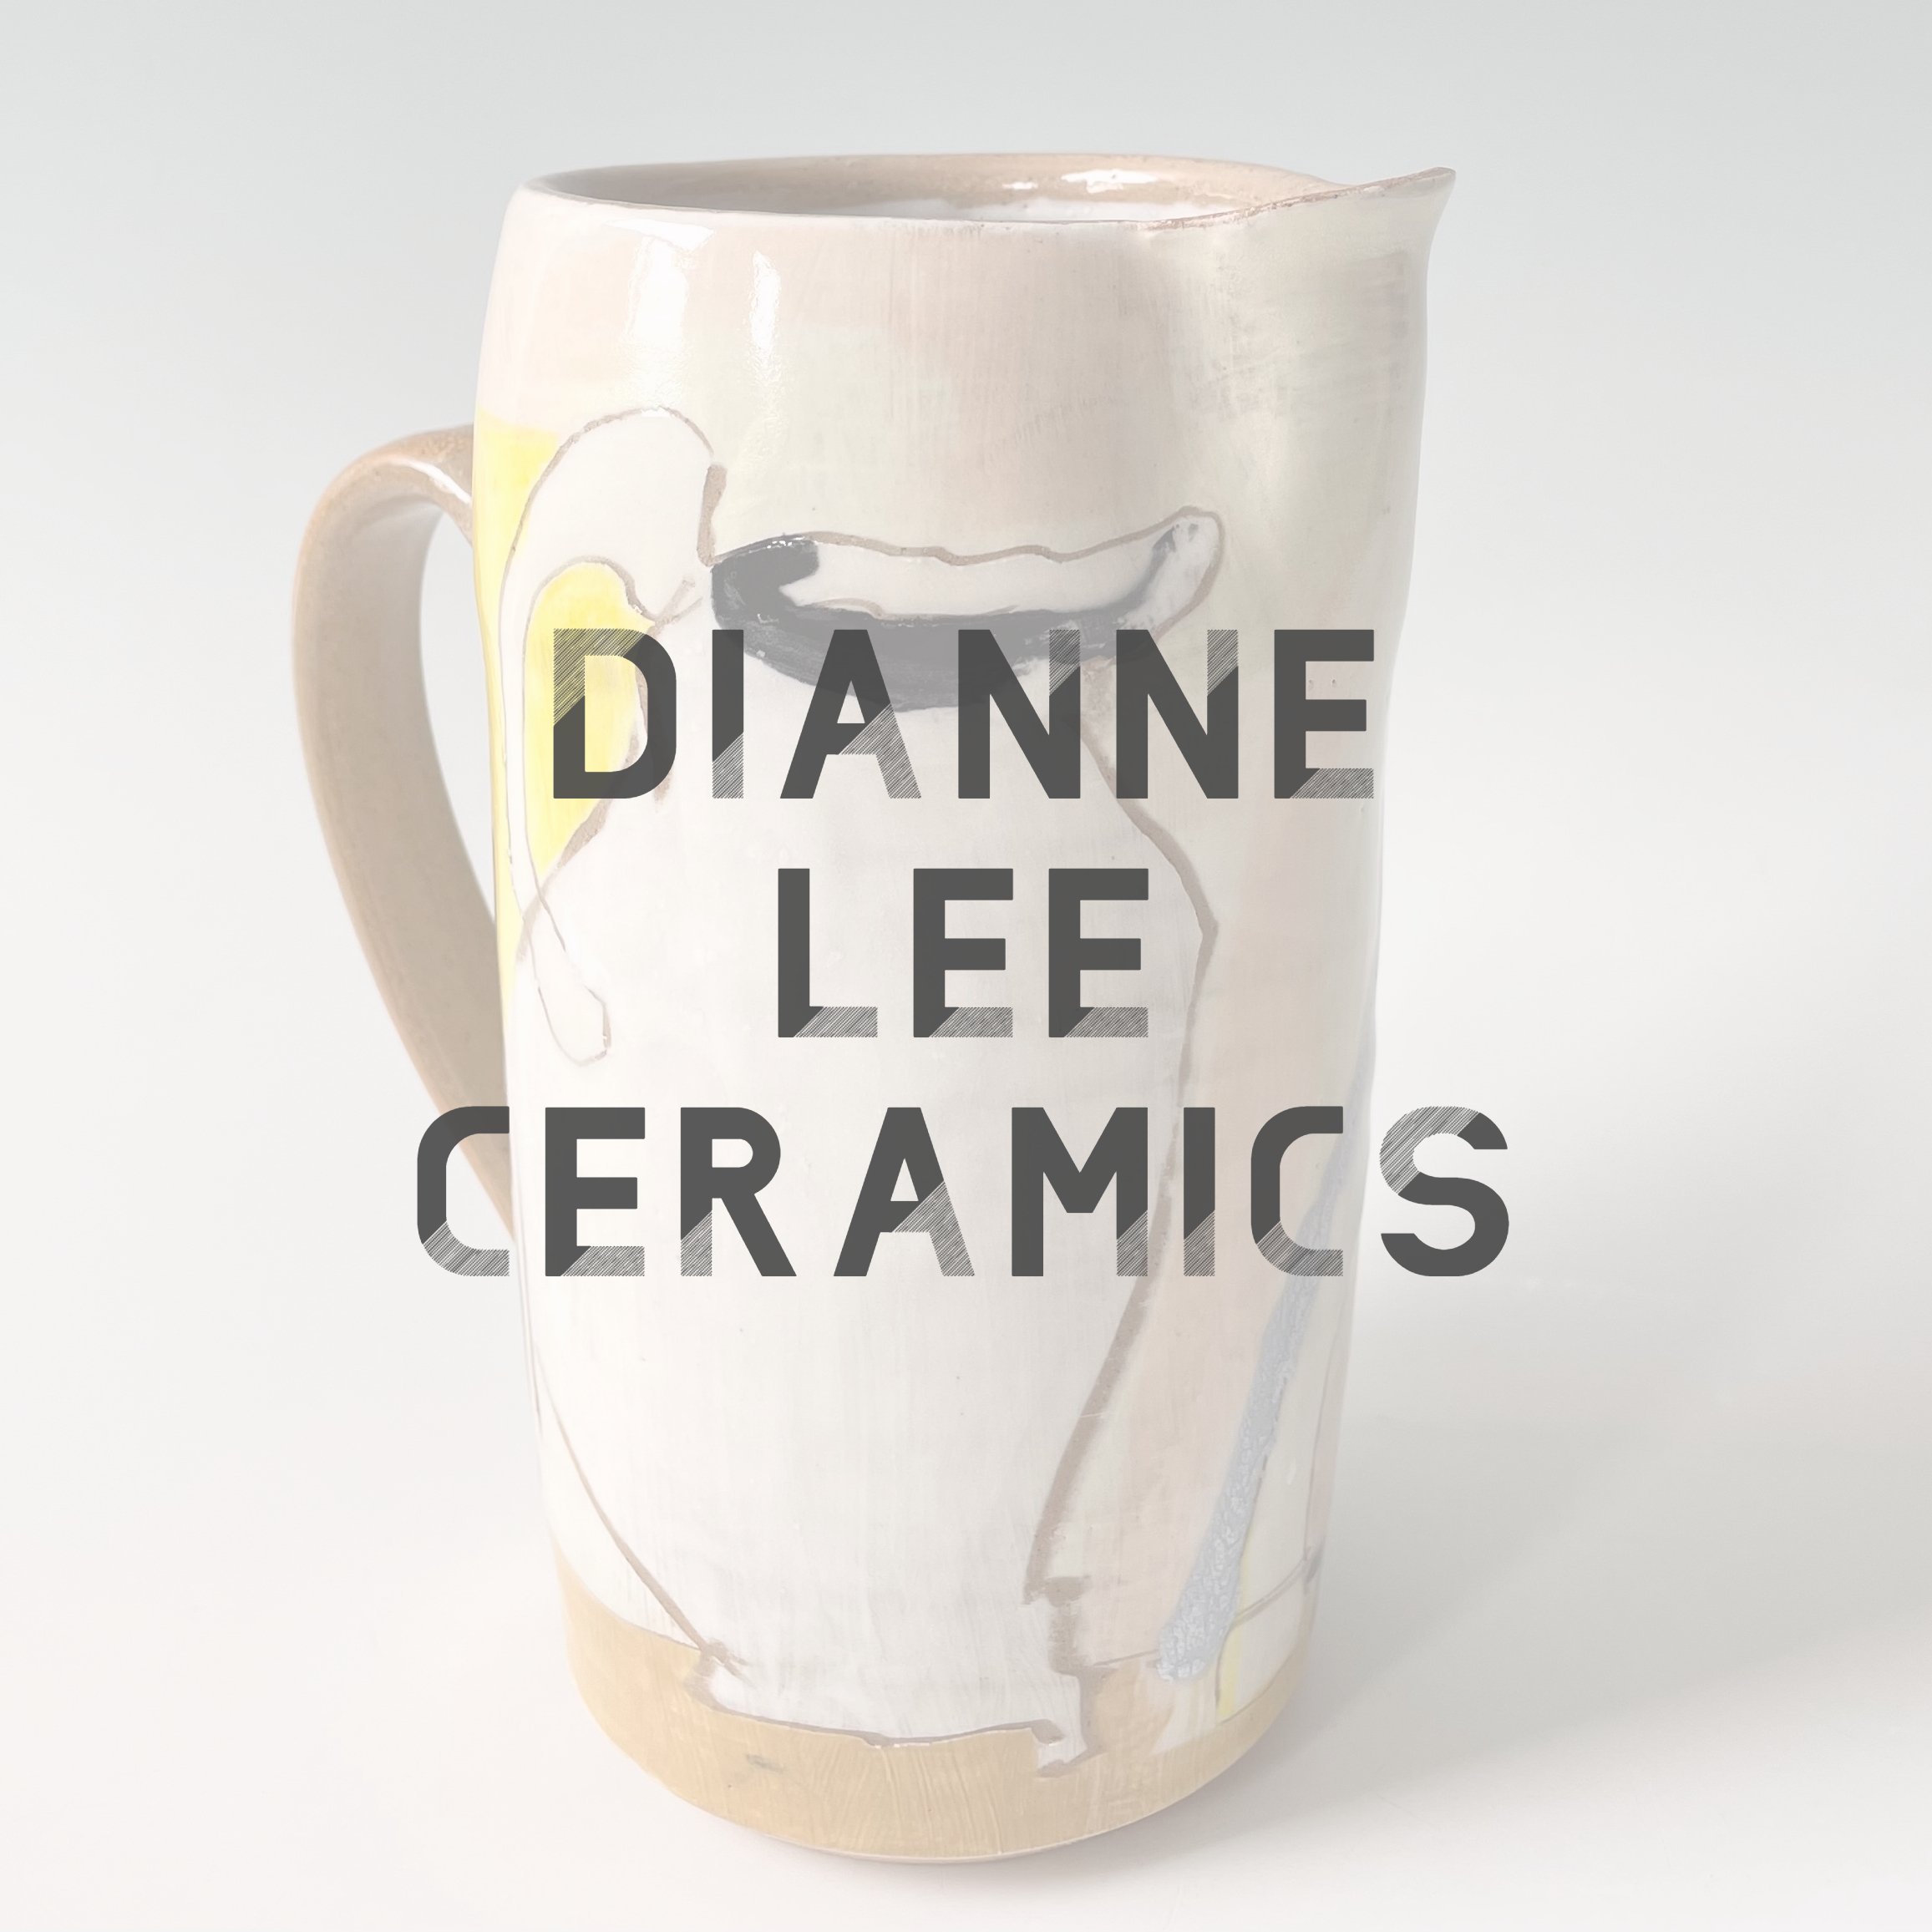 Dianne Lee Ceramics.jpg